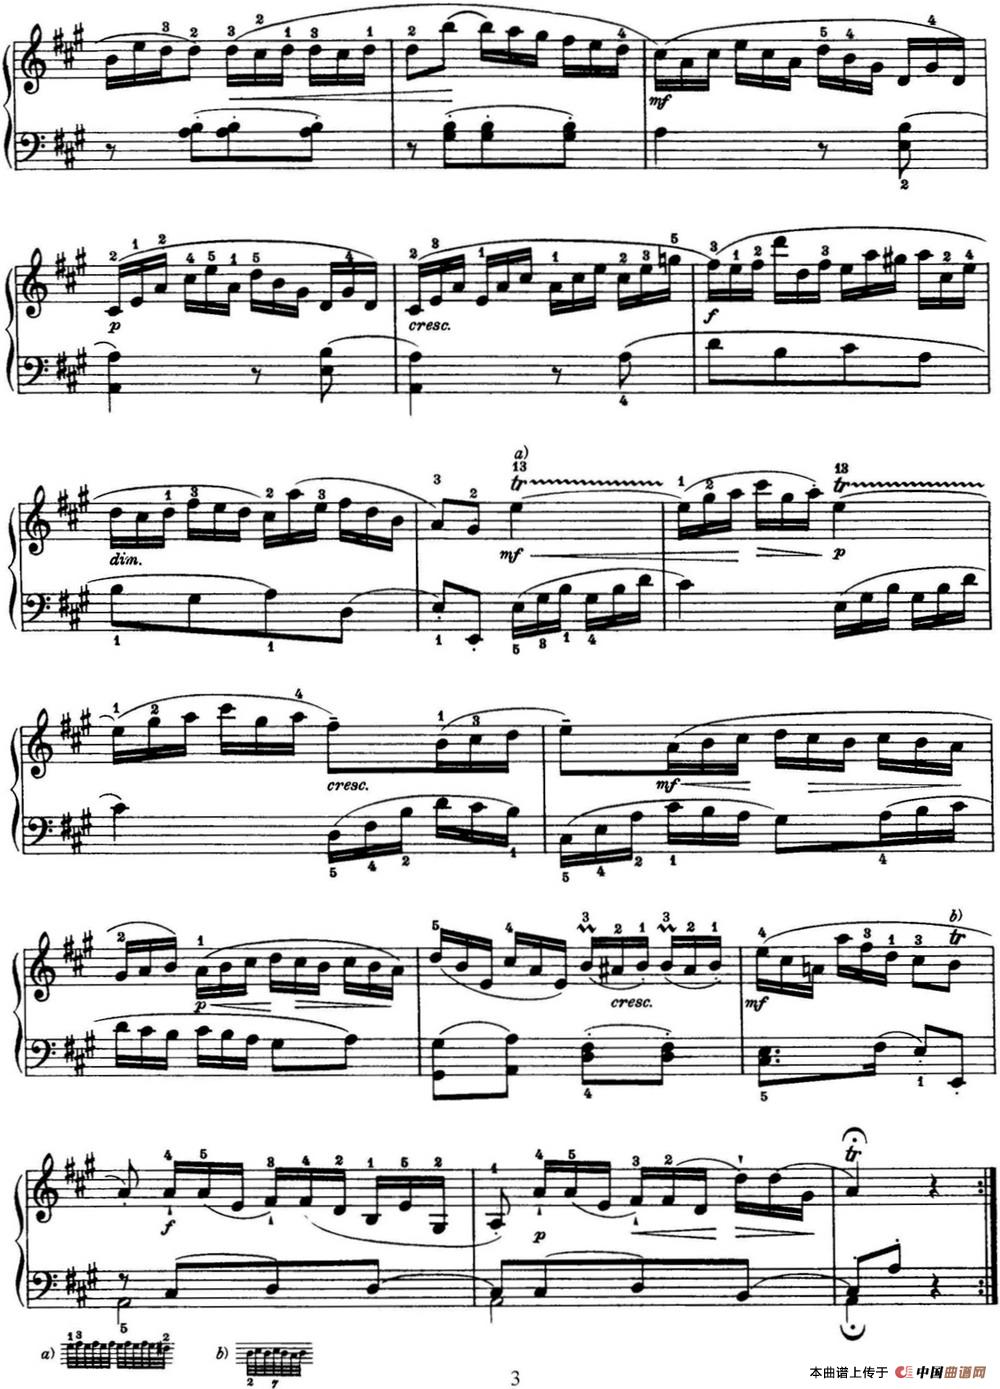 《海顿 钢琴奏鸣曲 Hob XVI 12 Divertimento A major》钢琴曲谱图分享